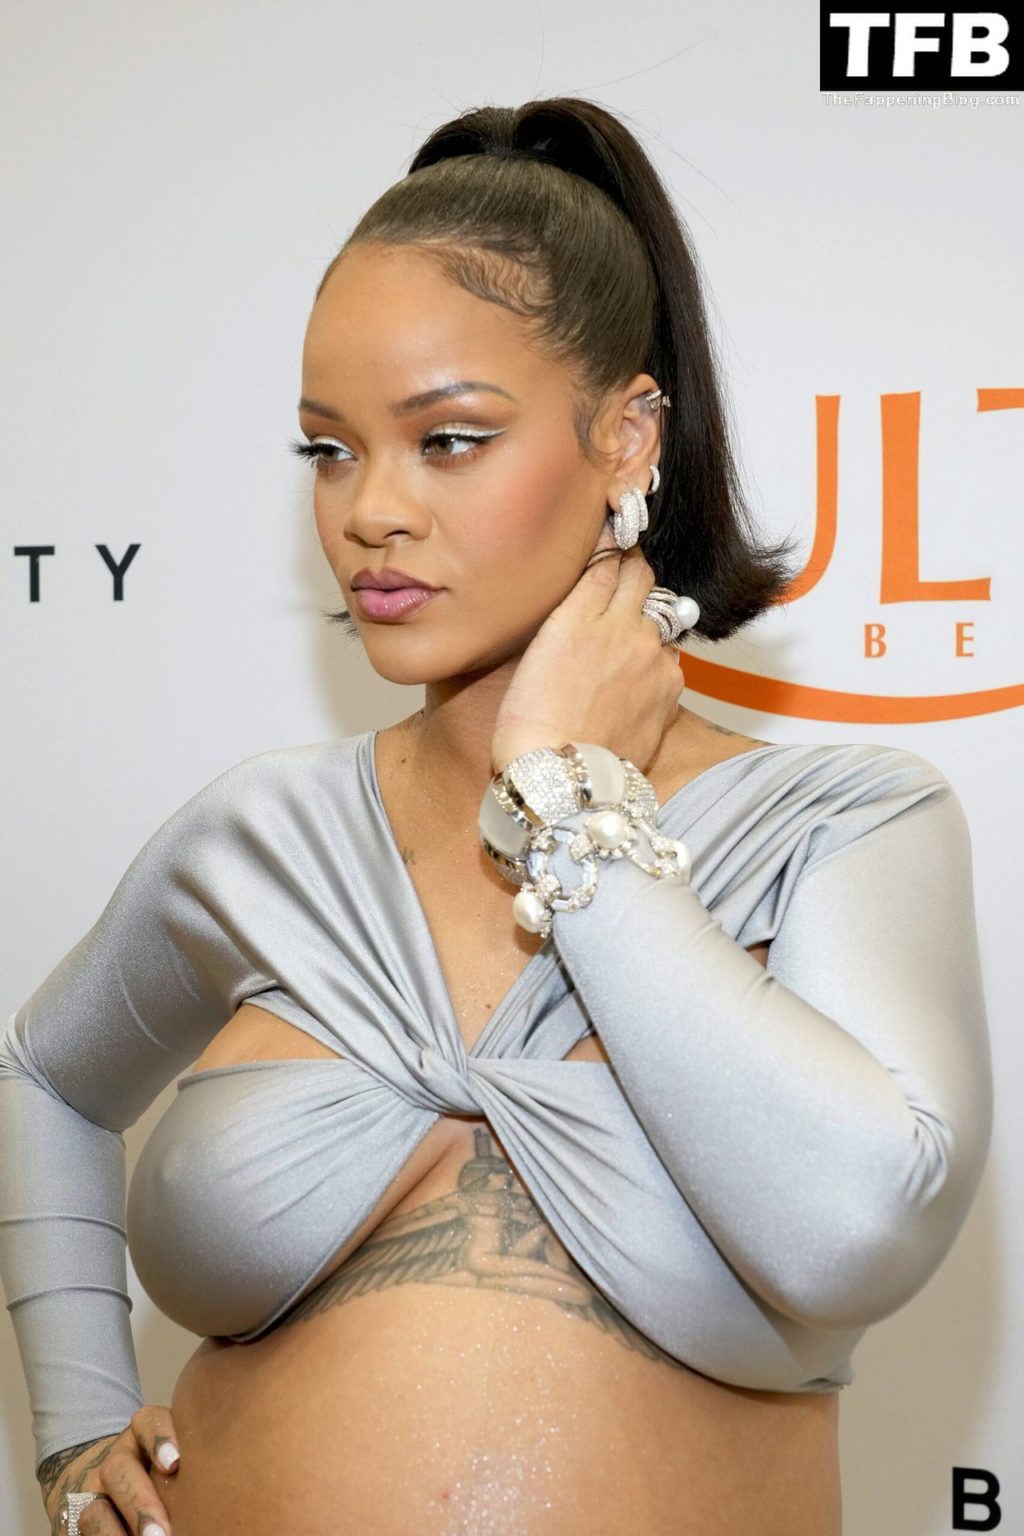 Rihanna Sexy The Fappening Blog 9 4 1024x1536 - Rihanna Celebrates the Launch of Fenty Beauty at Ulta Beauty (28 Photos)